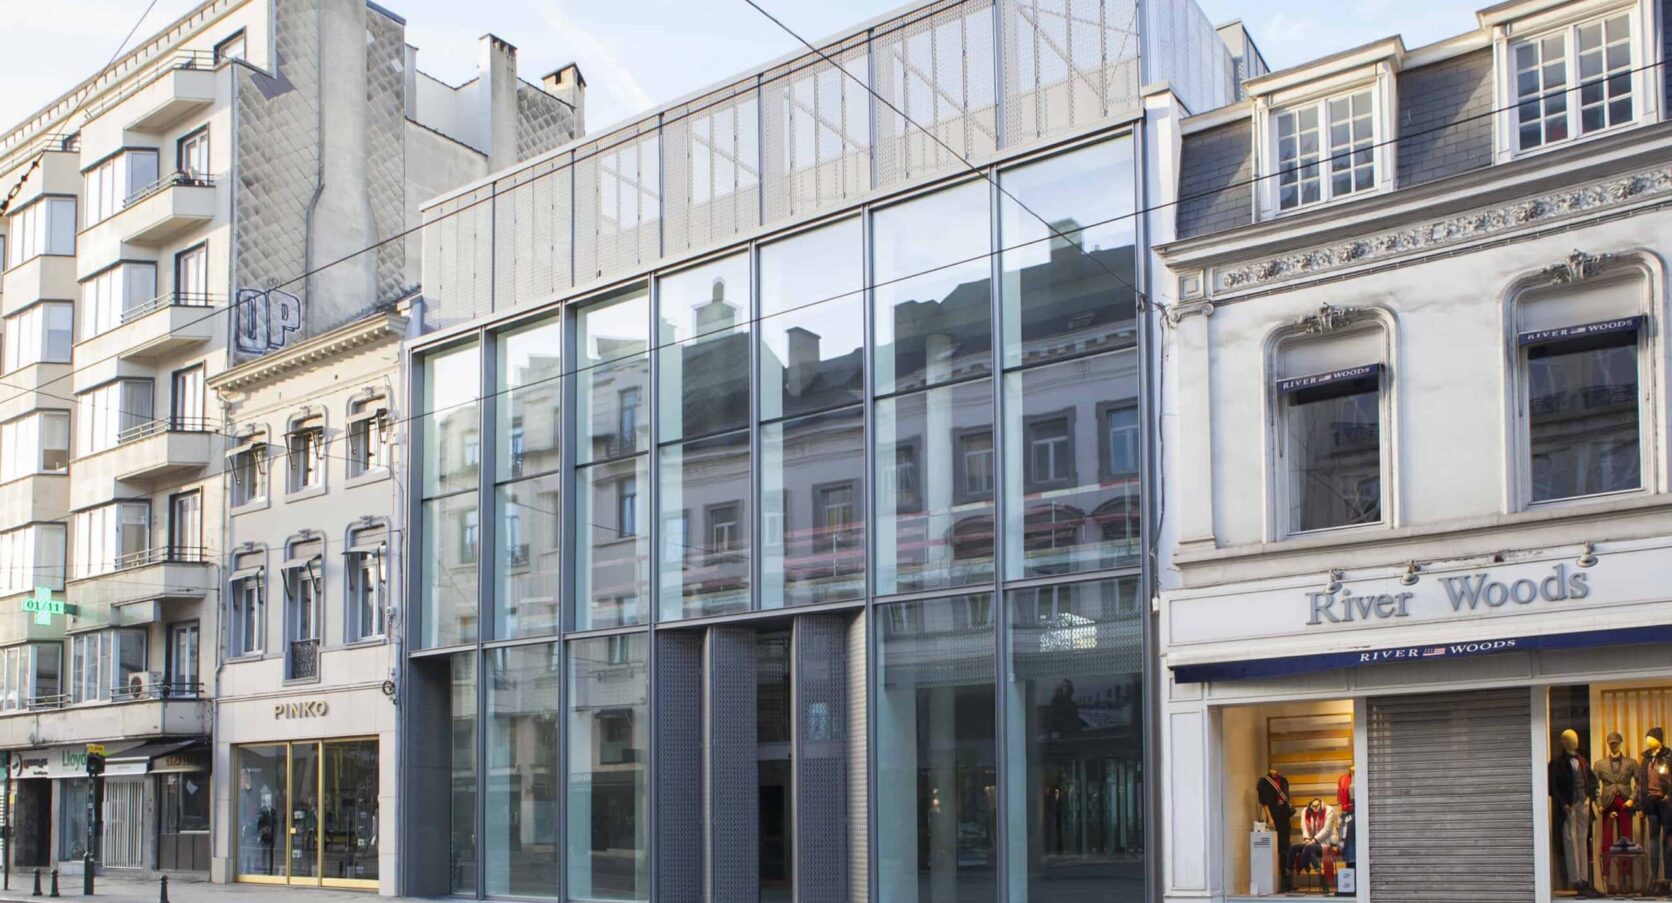 Garden Store Louise in Brussel, België met MD Designperforatie